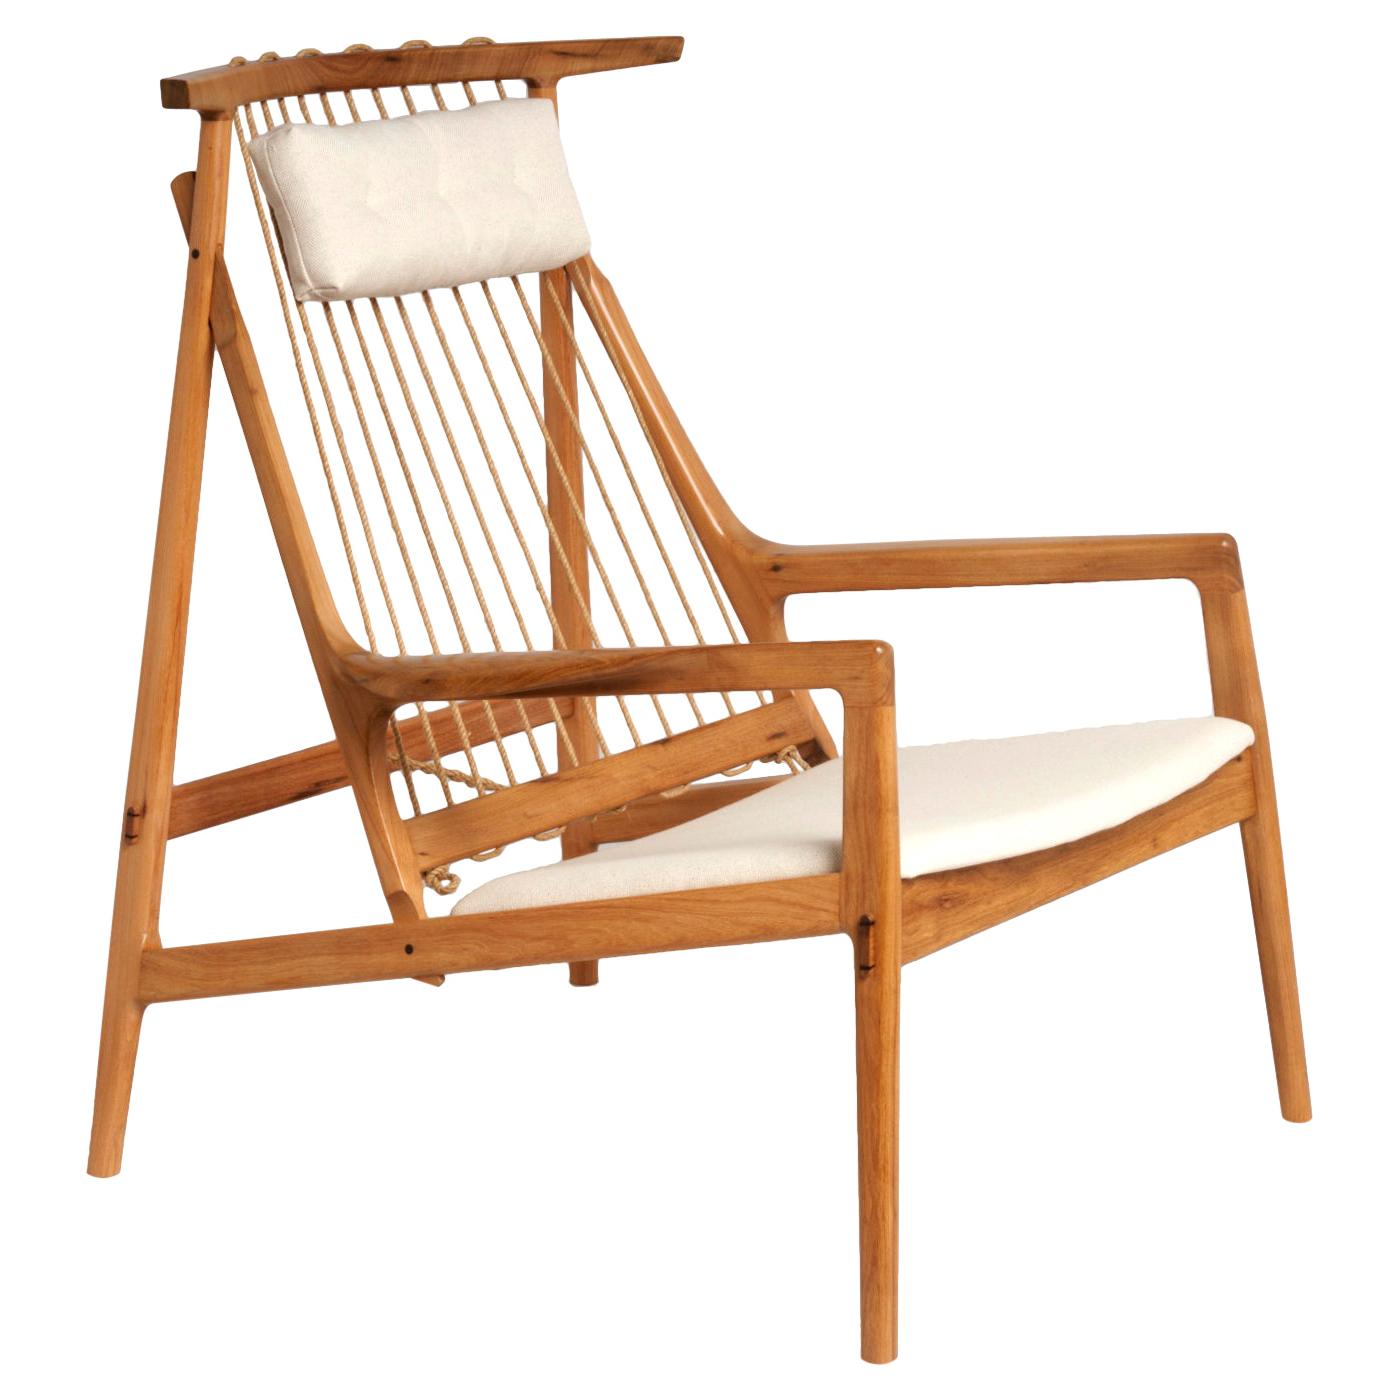 Zeitgenössischer Sessel aus aufgearbeitetem tropischem Hartholz, gepolsterter Sitz und Kopfkissen aus Leinen.

Die Rückenlehne besteht aus Rami Cord, einer pflanzlichen Faser, die gedreht und behandelt wird.

Dieses Stück kann auf Anfrage in einigen